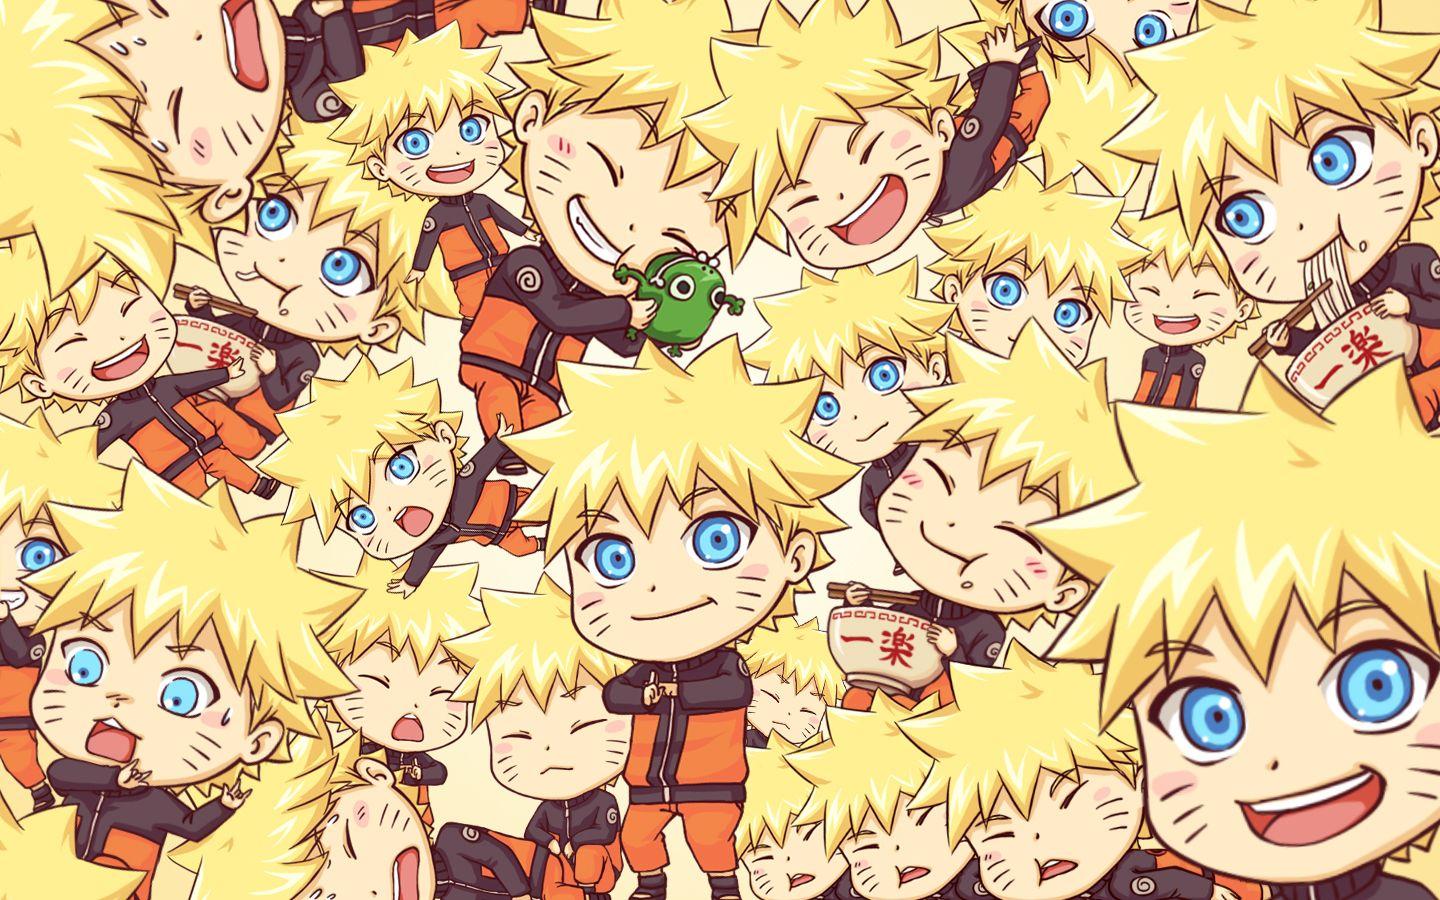 Vào thế giới ninja của Naruto thông qua bộ sưu tập Kawaii Naruto Wallpapers! Với những hình ảnh được vẽ theo phong cách Kawaii đáng yêu, bạn sẽ cảm thấy hài lòng và muốn sở hữu ngay tấm hình này cho thiết bị của mình.